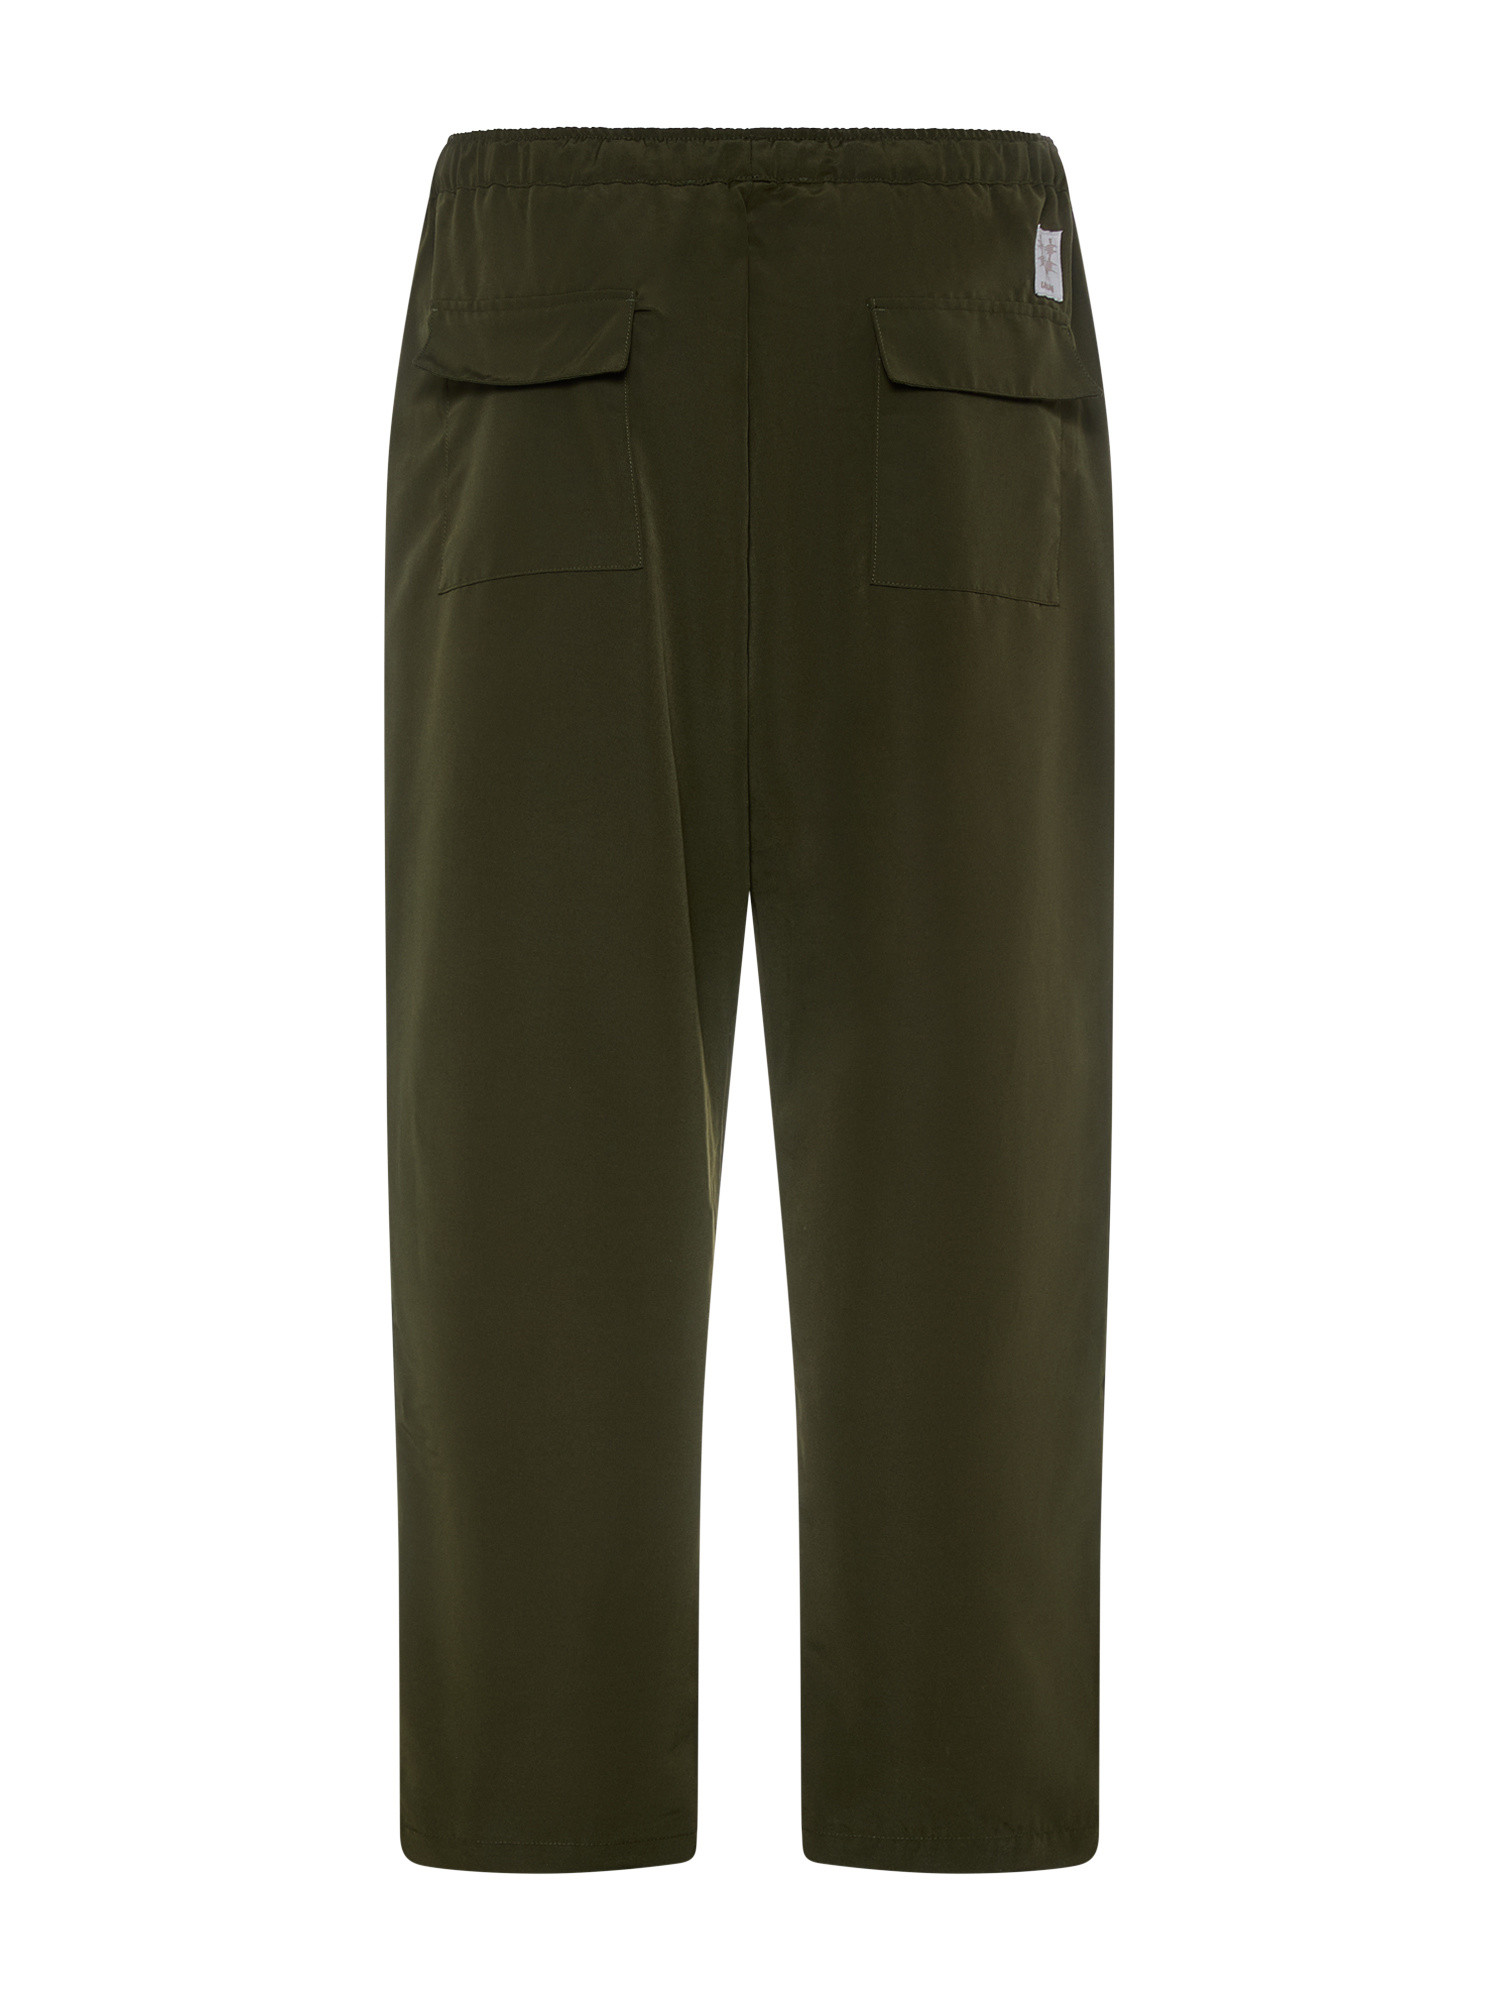 Usual - Pantaloni Militari Dealer, Verde scuro, large image number 1